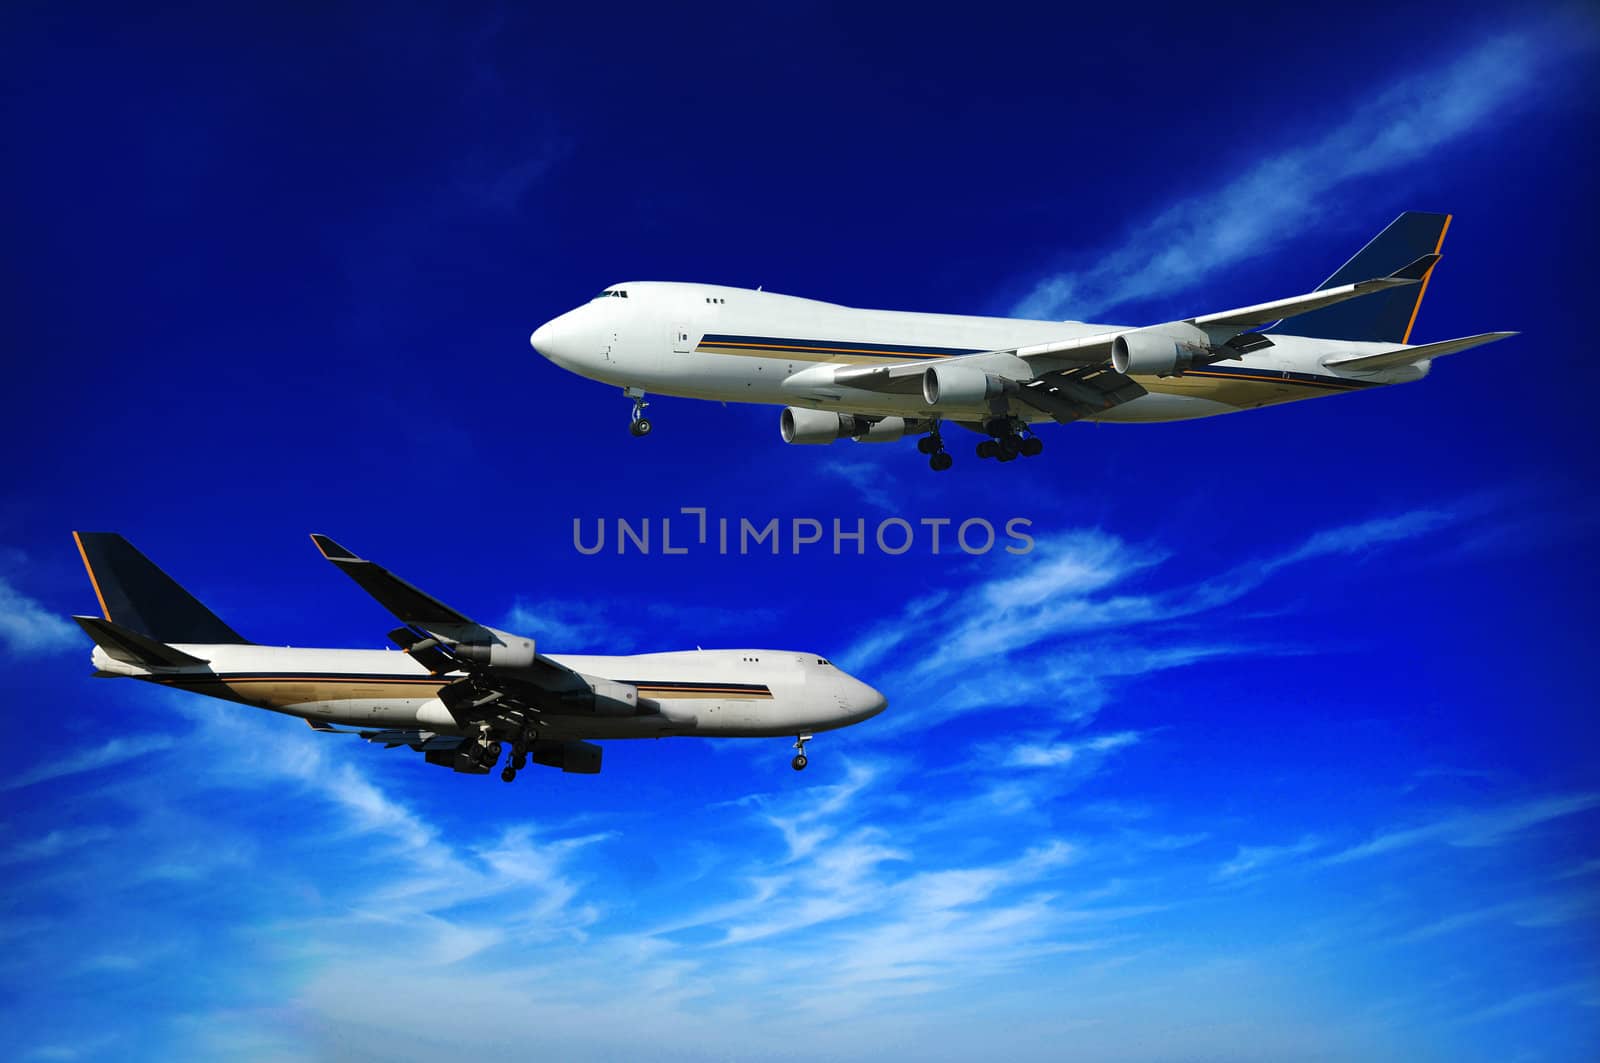 Two jumbo jets on a blue sky.